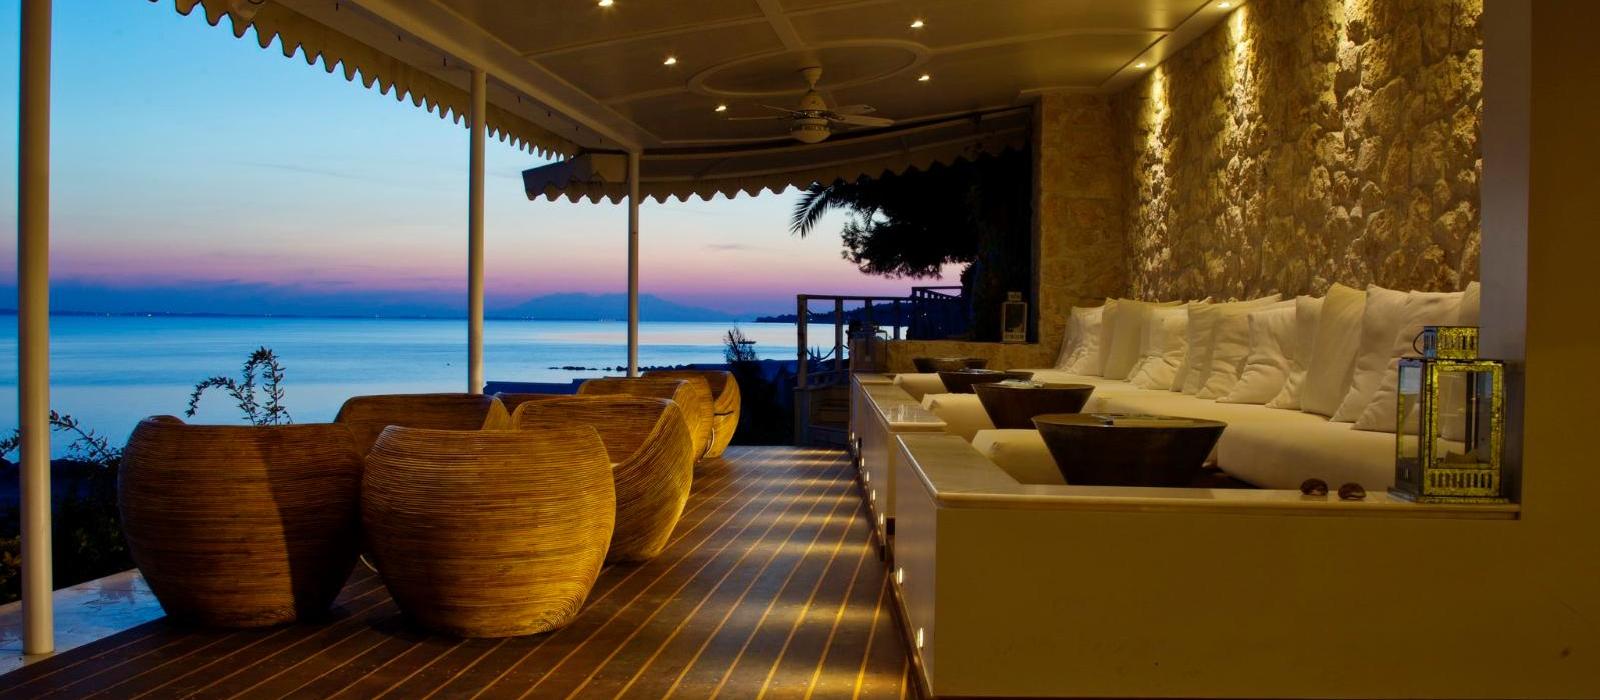 达纳伊别墅度假酒店(Danai Beach Resort & Villas) 图片  www.lhw.cn